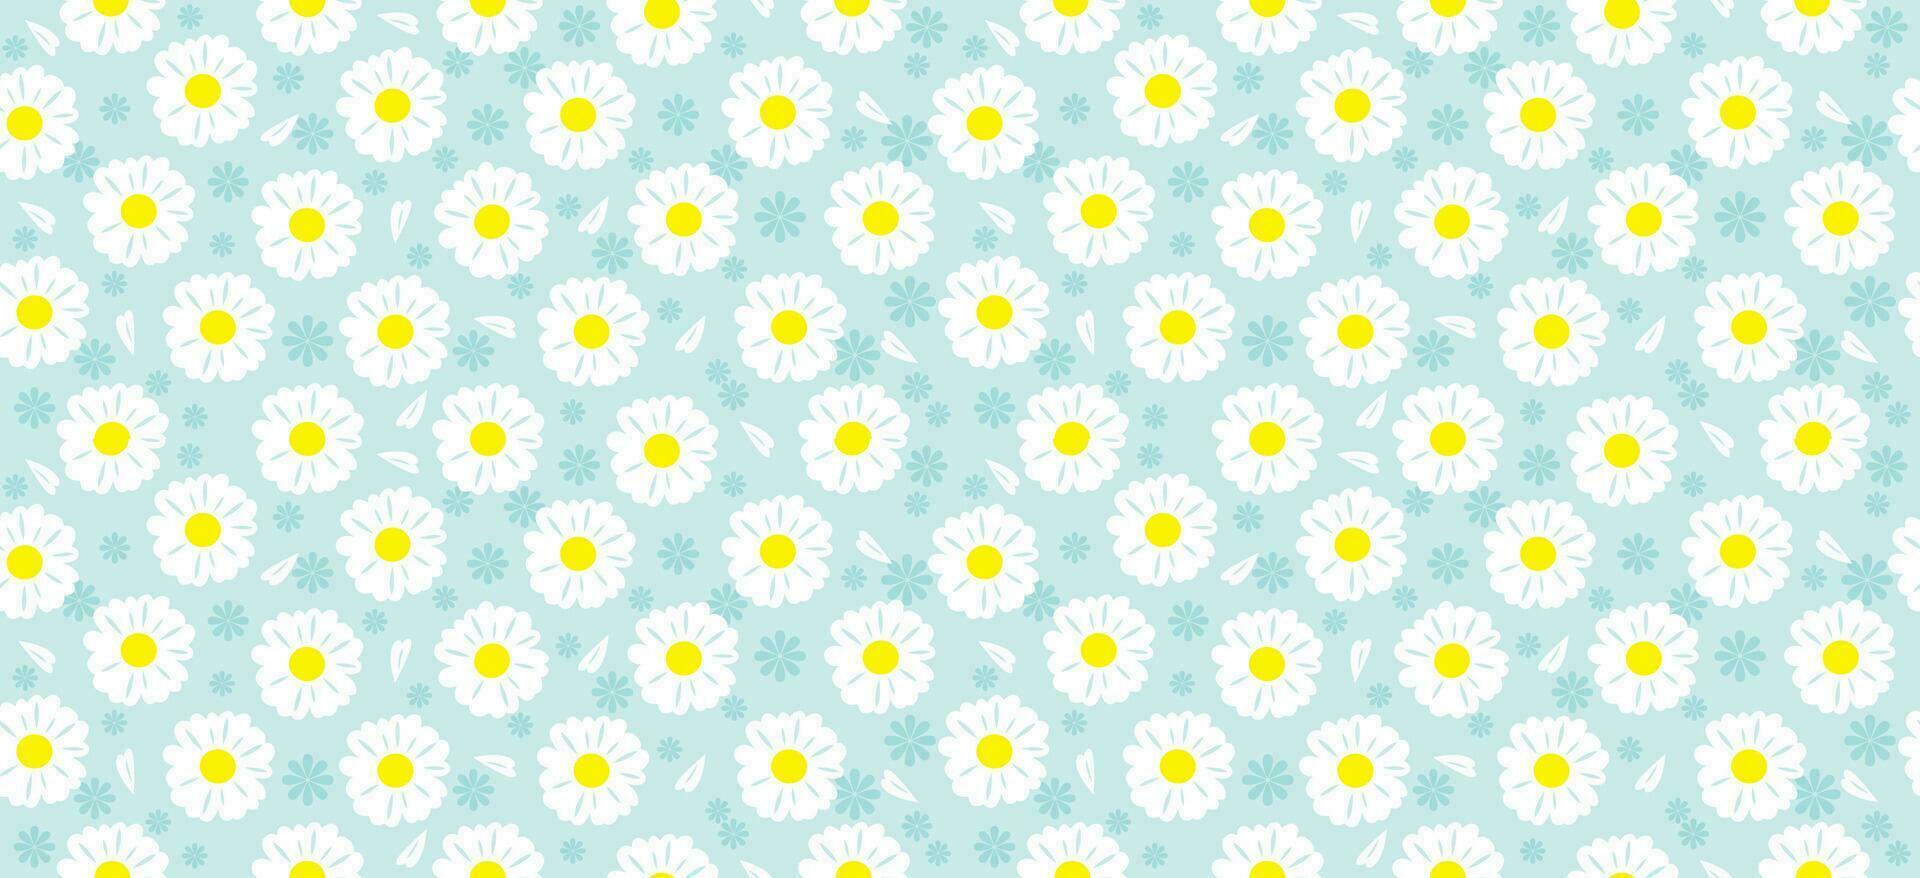 daisy blomma mönster. skön vit blomma bakgrund. blommig blomma daisy. vår vit blomma design vektor. tusenskönas på en ljus blå bakgrund. vektor design för tyg, slå in papper, skriva ut kort.